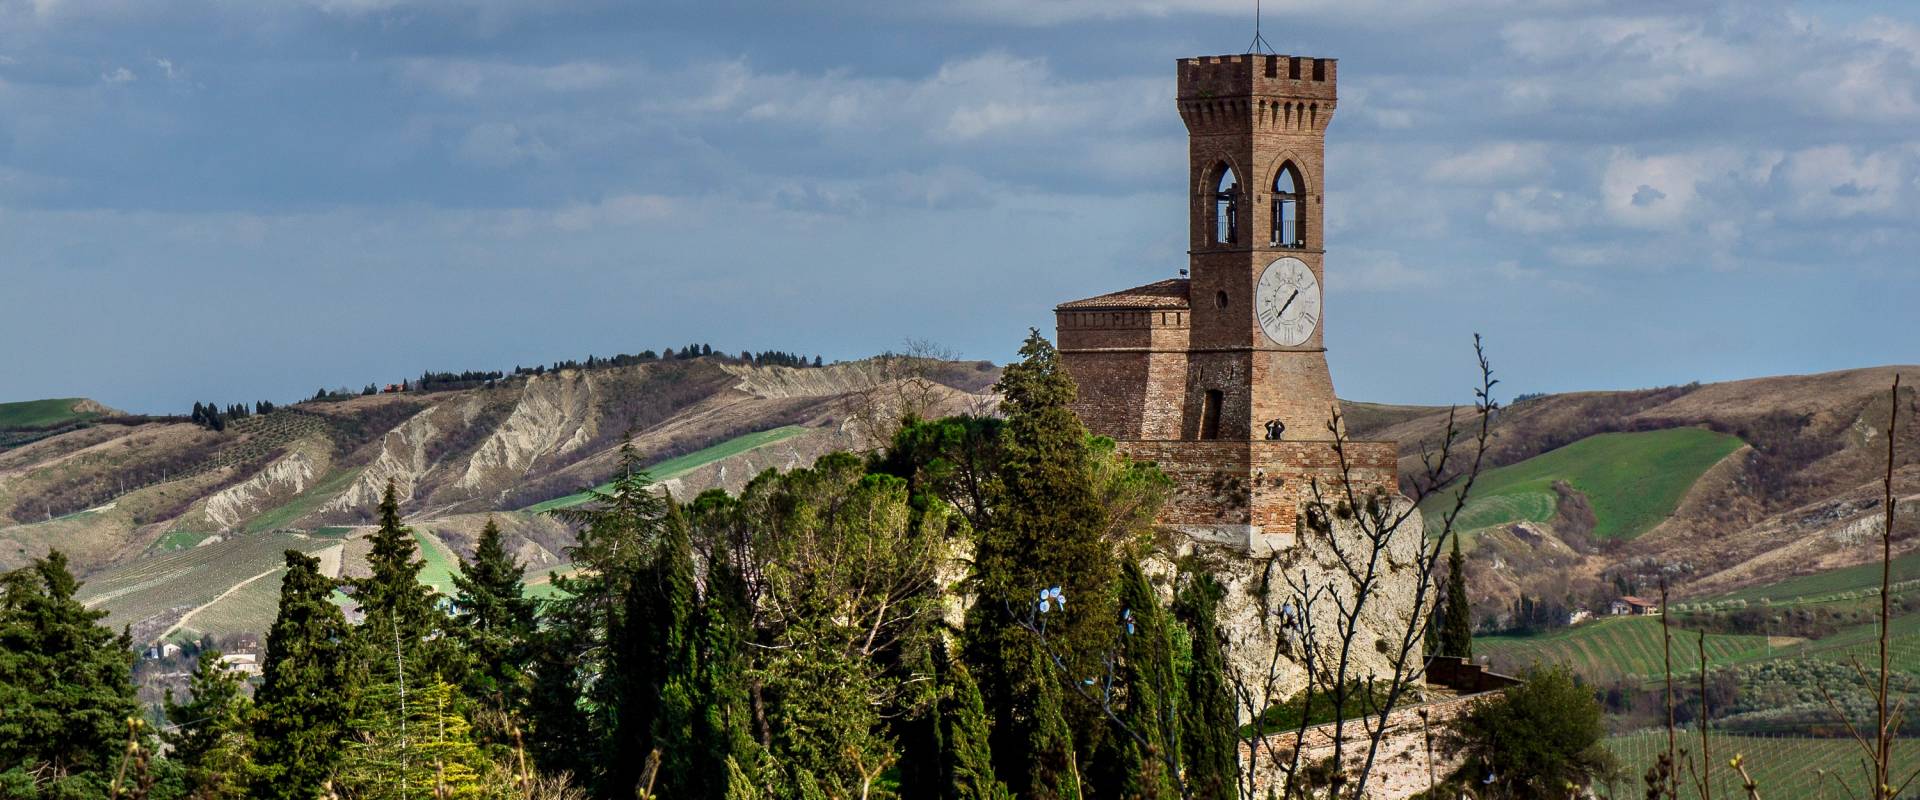 La torre dell'orologio - Brisighella - foto di Vanni Lazzari